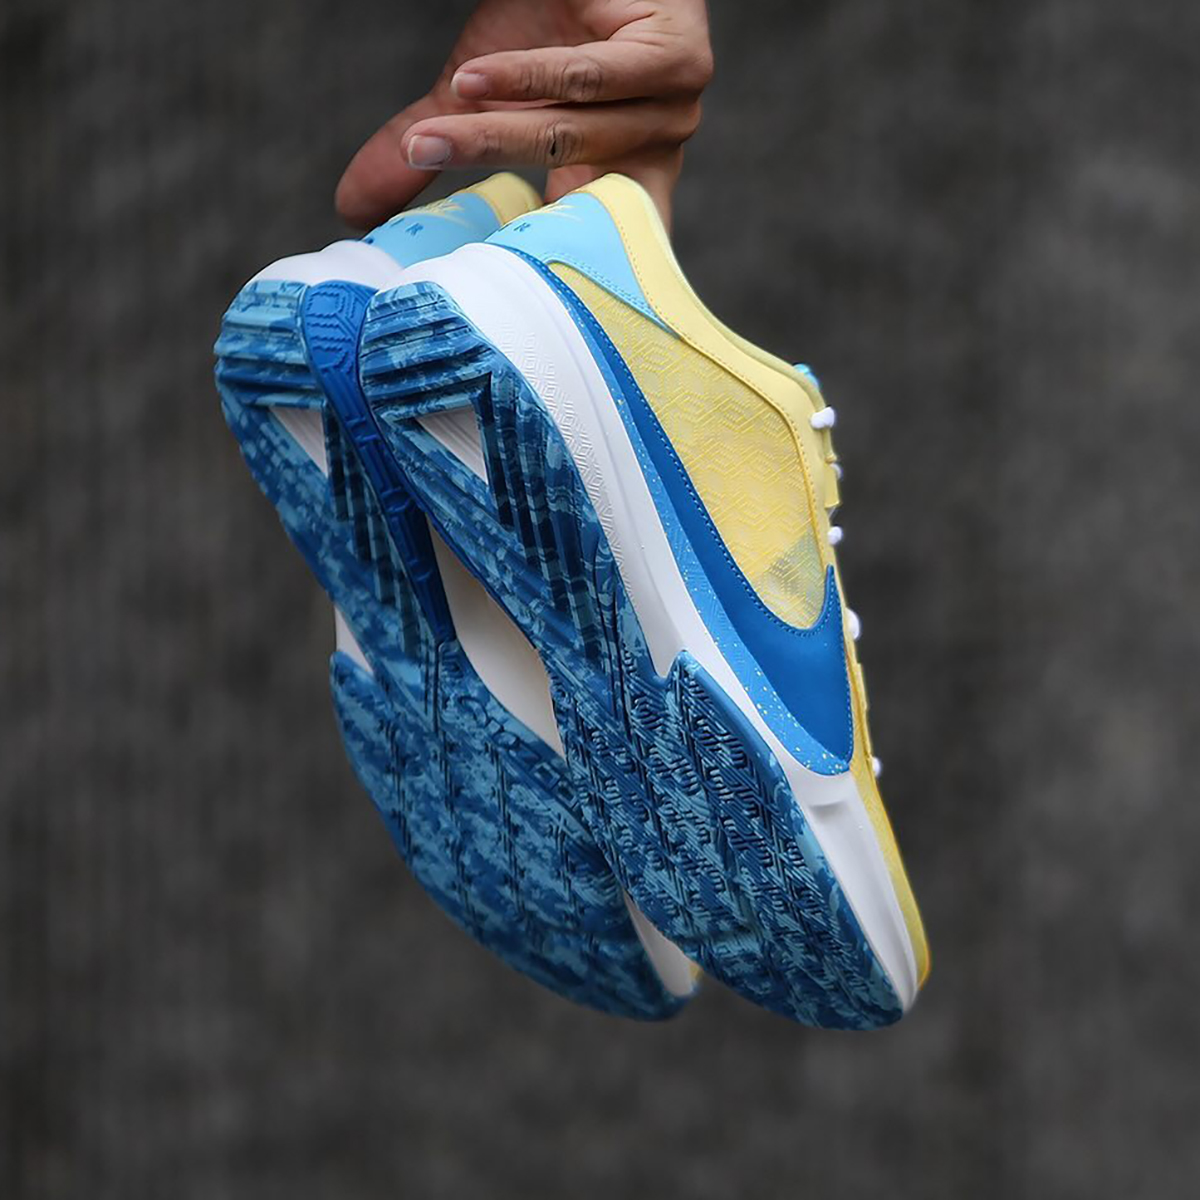 Nike Zoom Freak 5 Yellow Blue Release Date 6